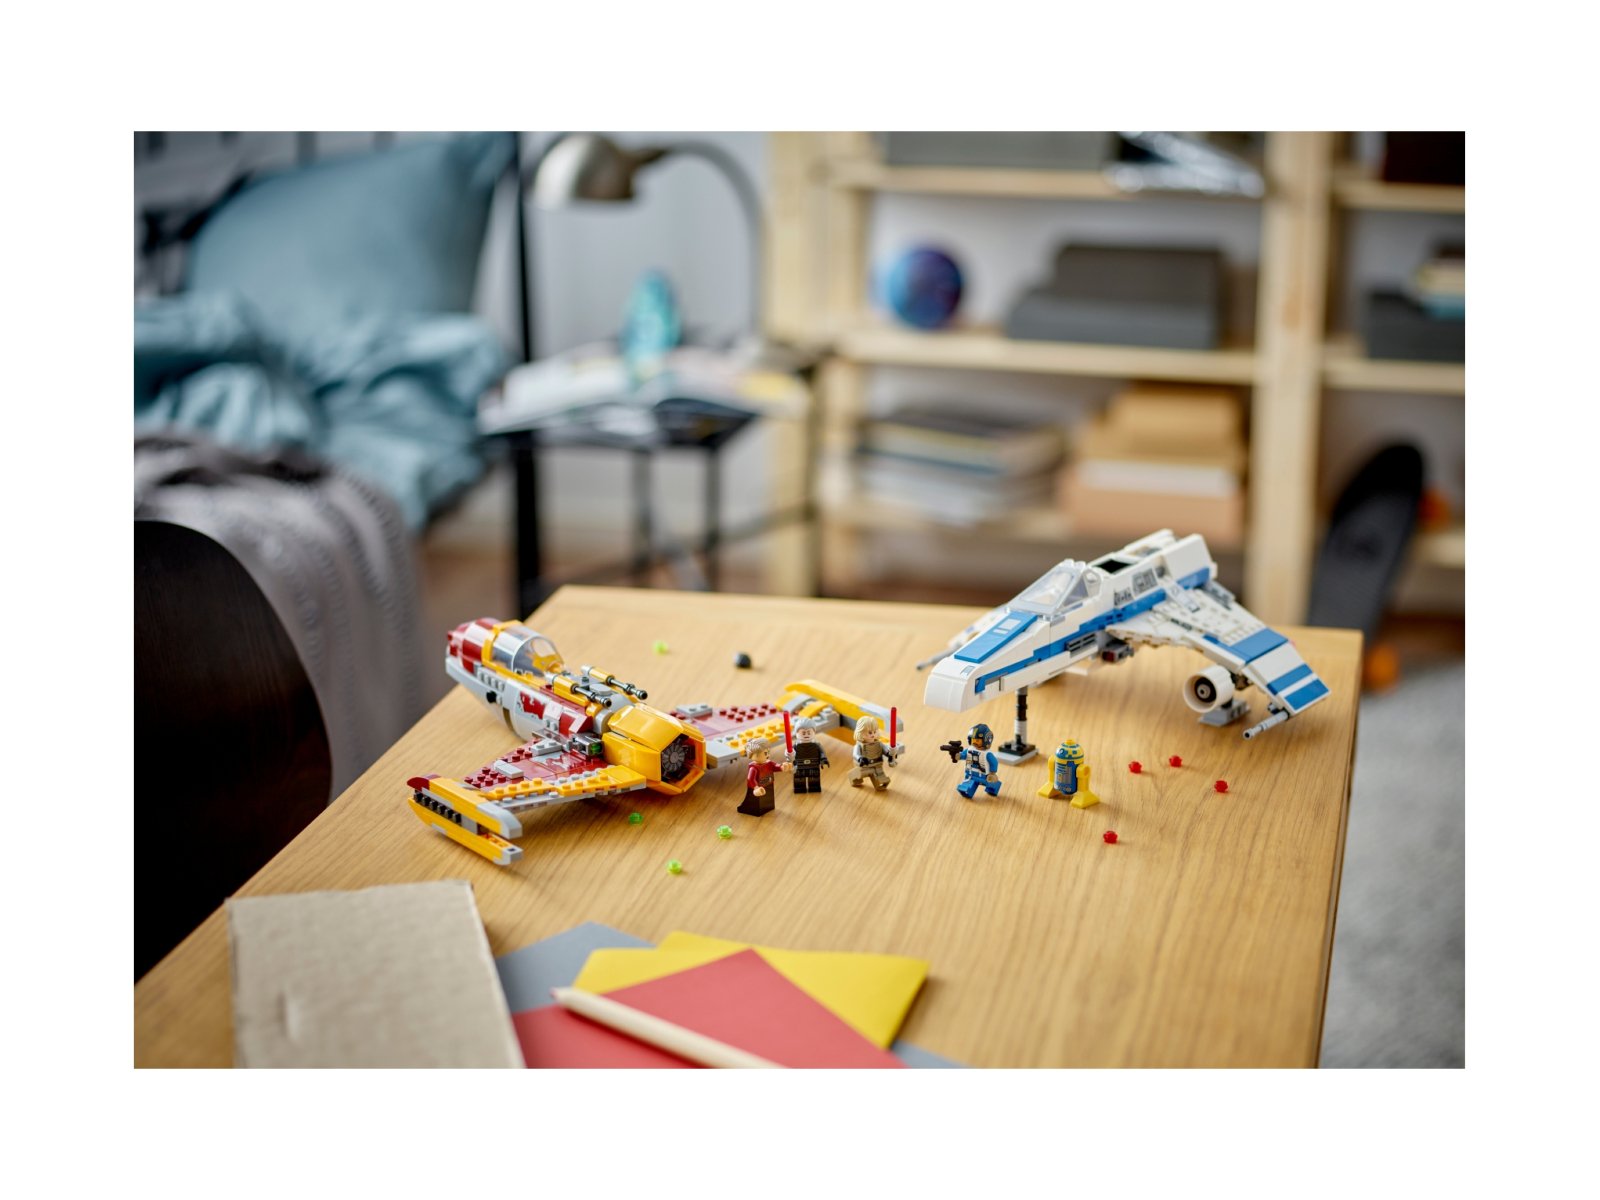 LEGO Star Wars E-Wing™ Nowej Republiki kontra Myśliwiec™ Shin Hati 75364